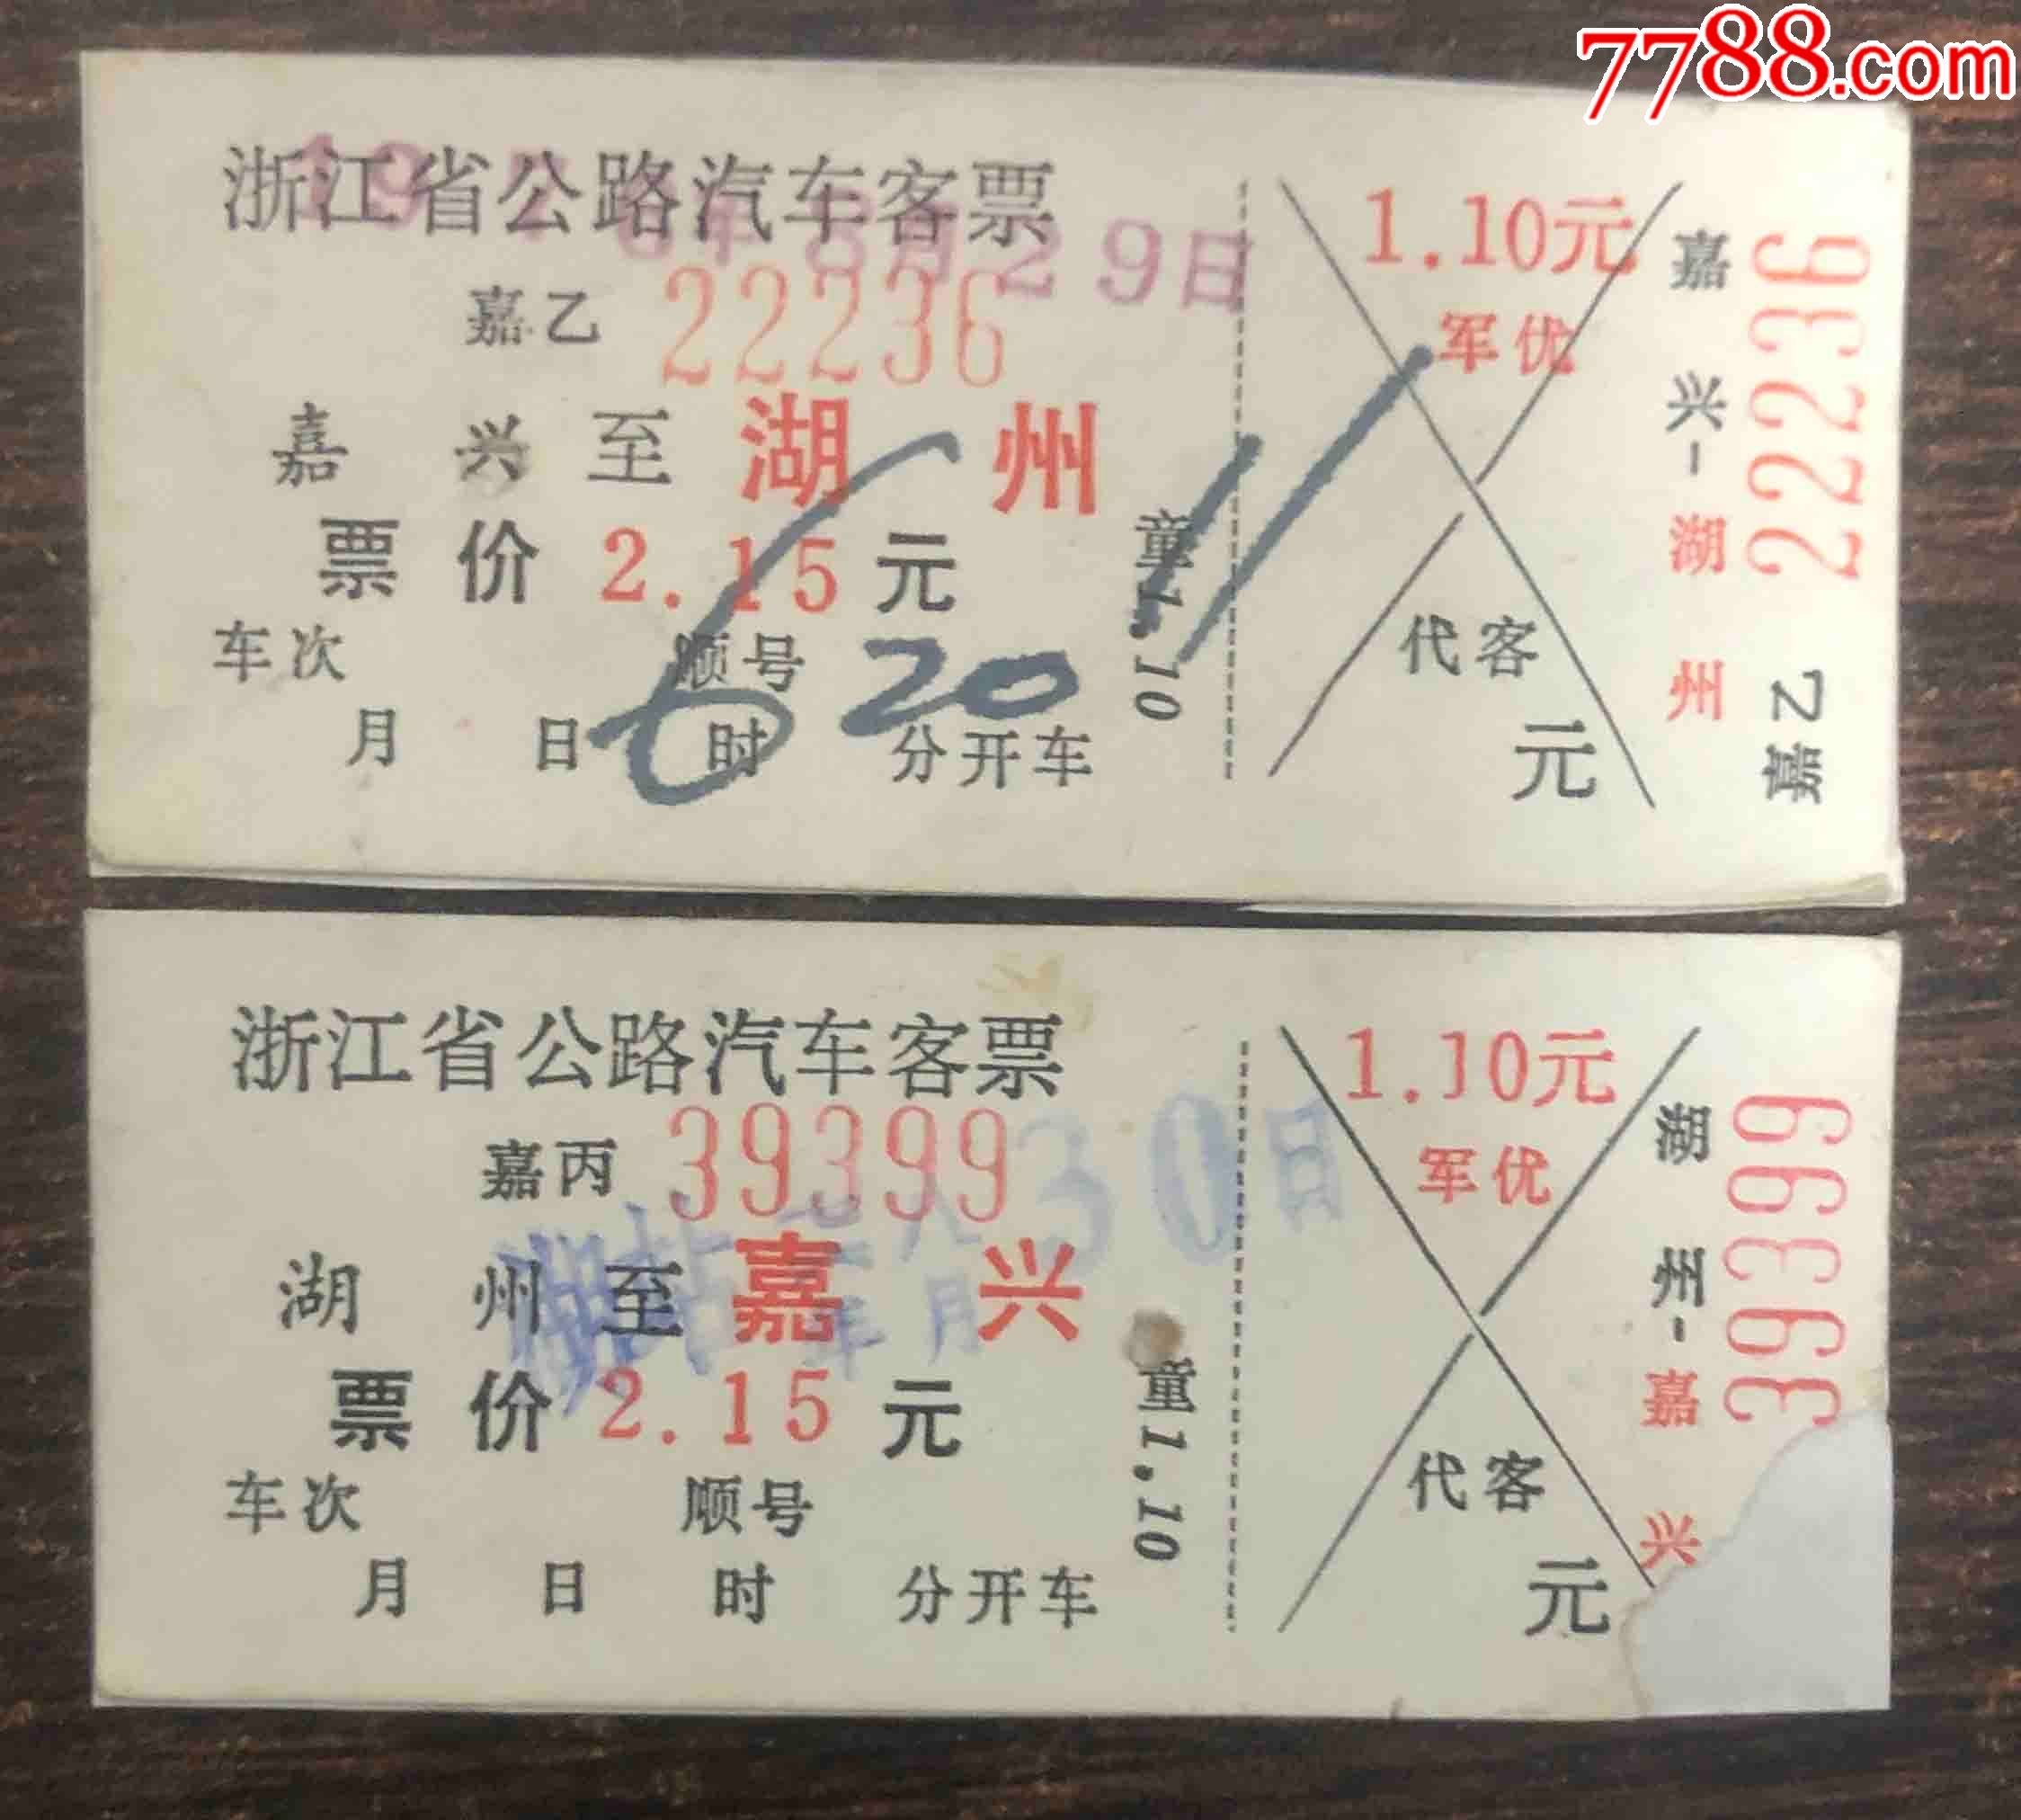 上海到武汉火车几点放票_郑州到湖州普通火车_湖州到郑州火车票